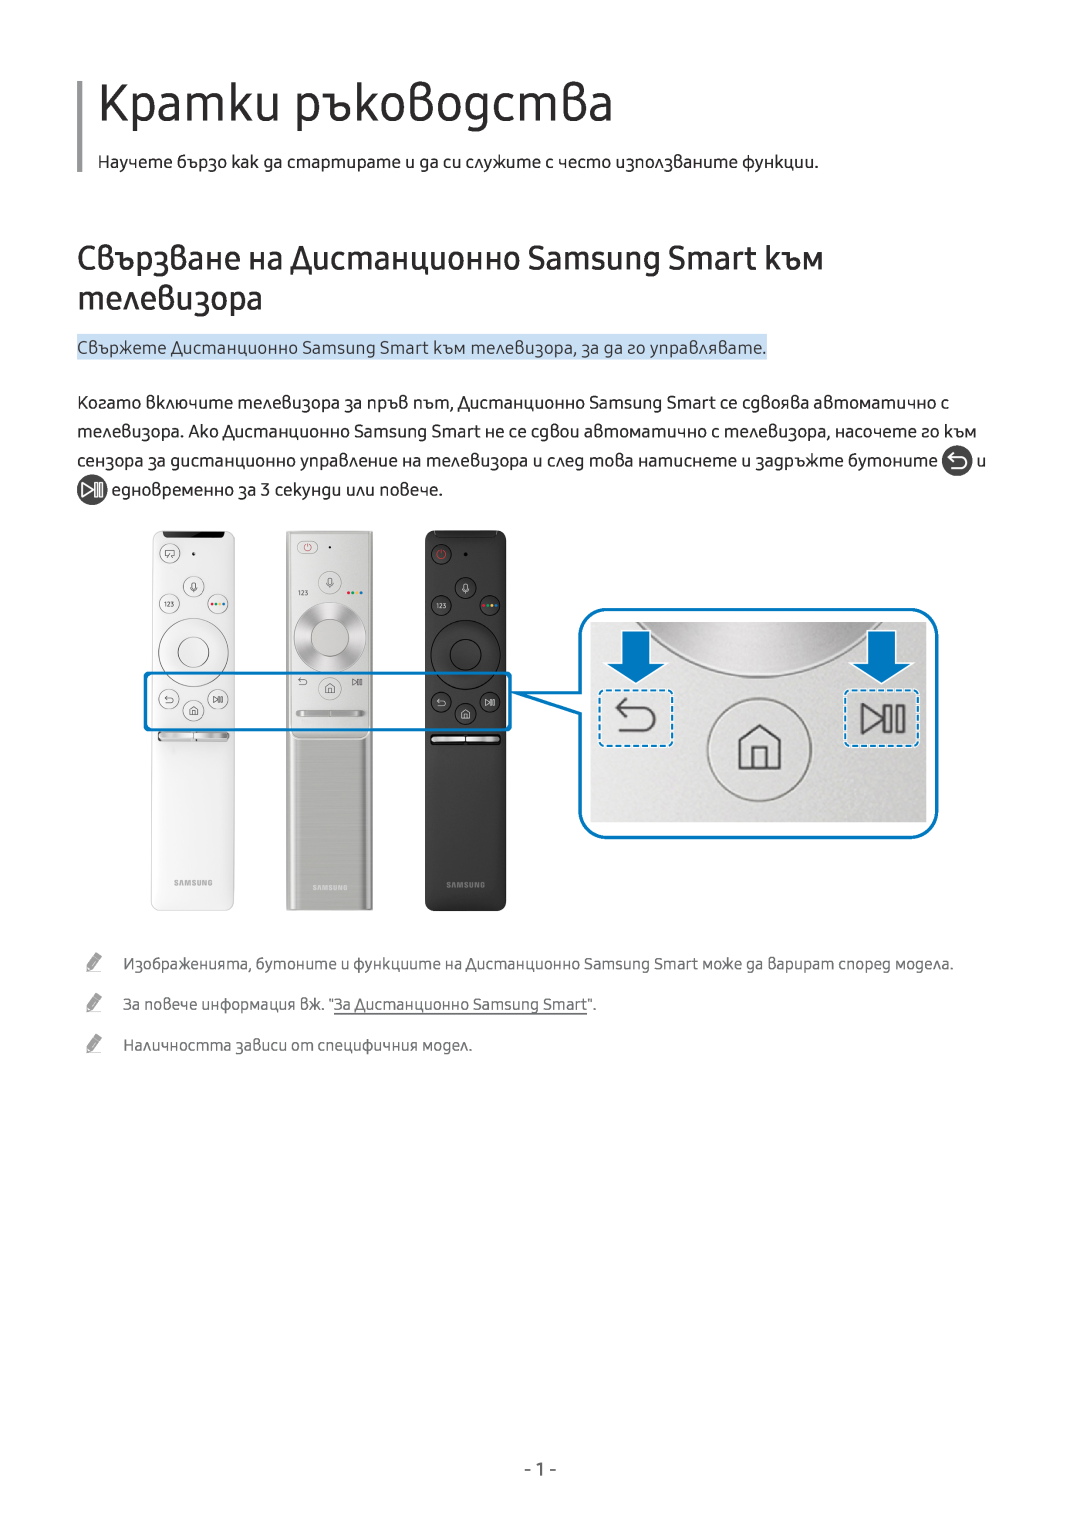 Samsung UE49MU8002TXXH, UE55MU7002TXXH manual Кратки ръководства, Свързване на Дистанционно Samsung Smart към телевизора 